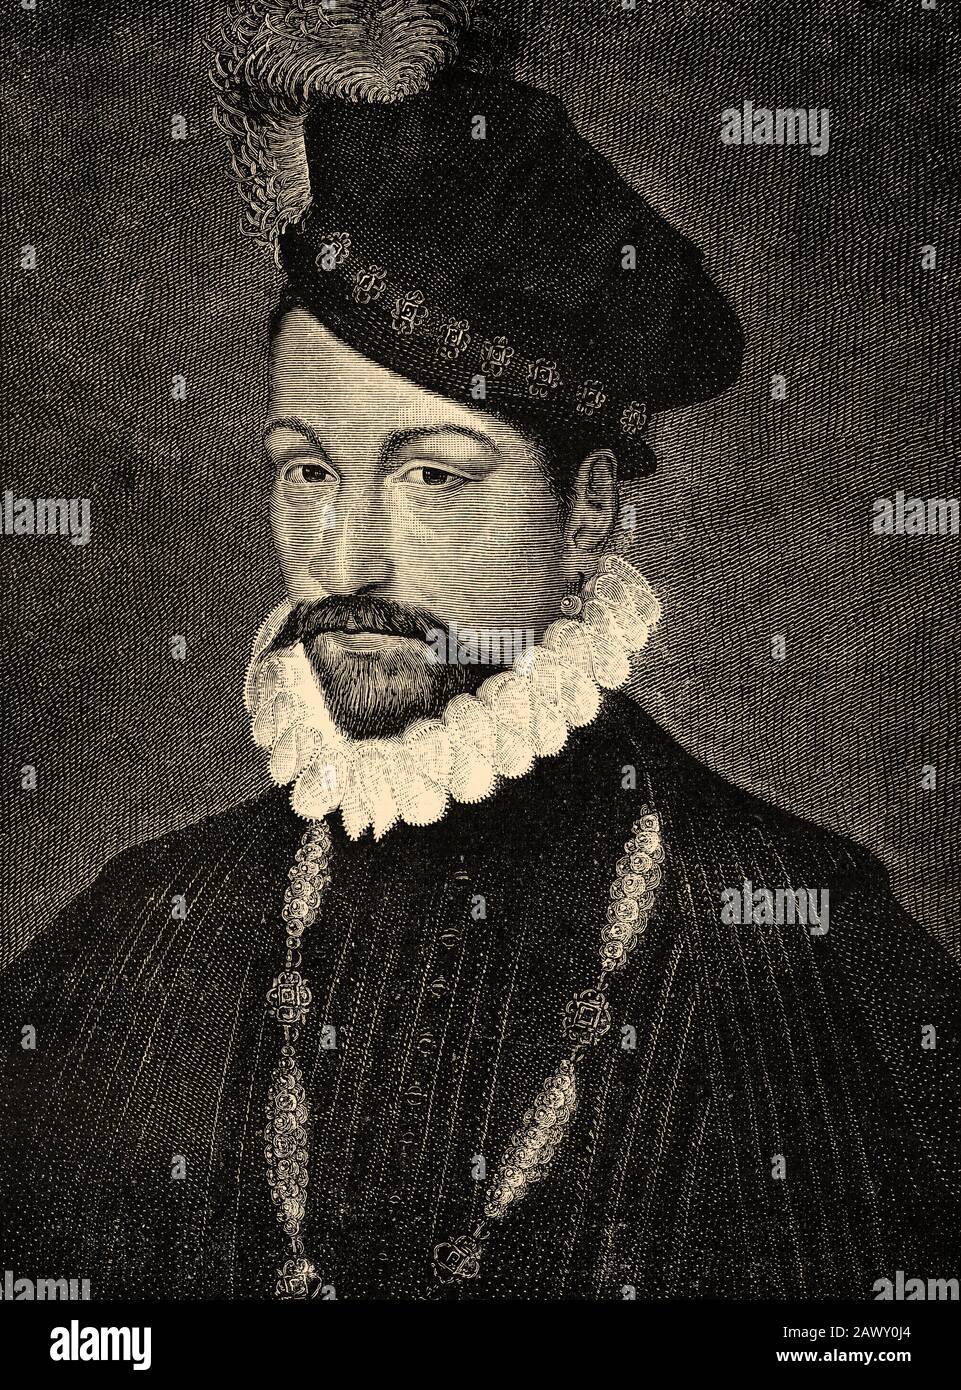 Porträt von Karl IX. Von Frankreich, Carlos Maximilian von Frankreich (Saint-Germain-en-Laye, 27. Juni 1550 - Vincennen, 30. Mai 1574), war König von Frankreich Stockfoto